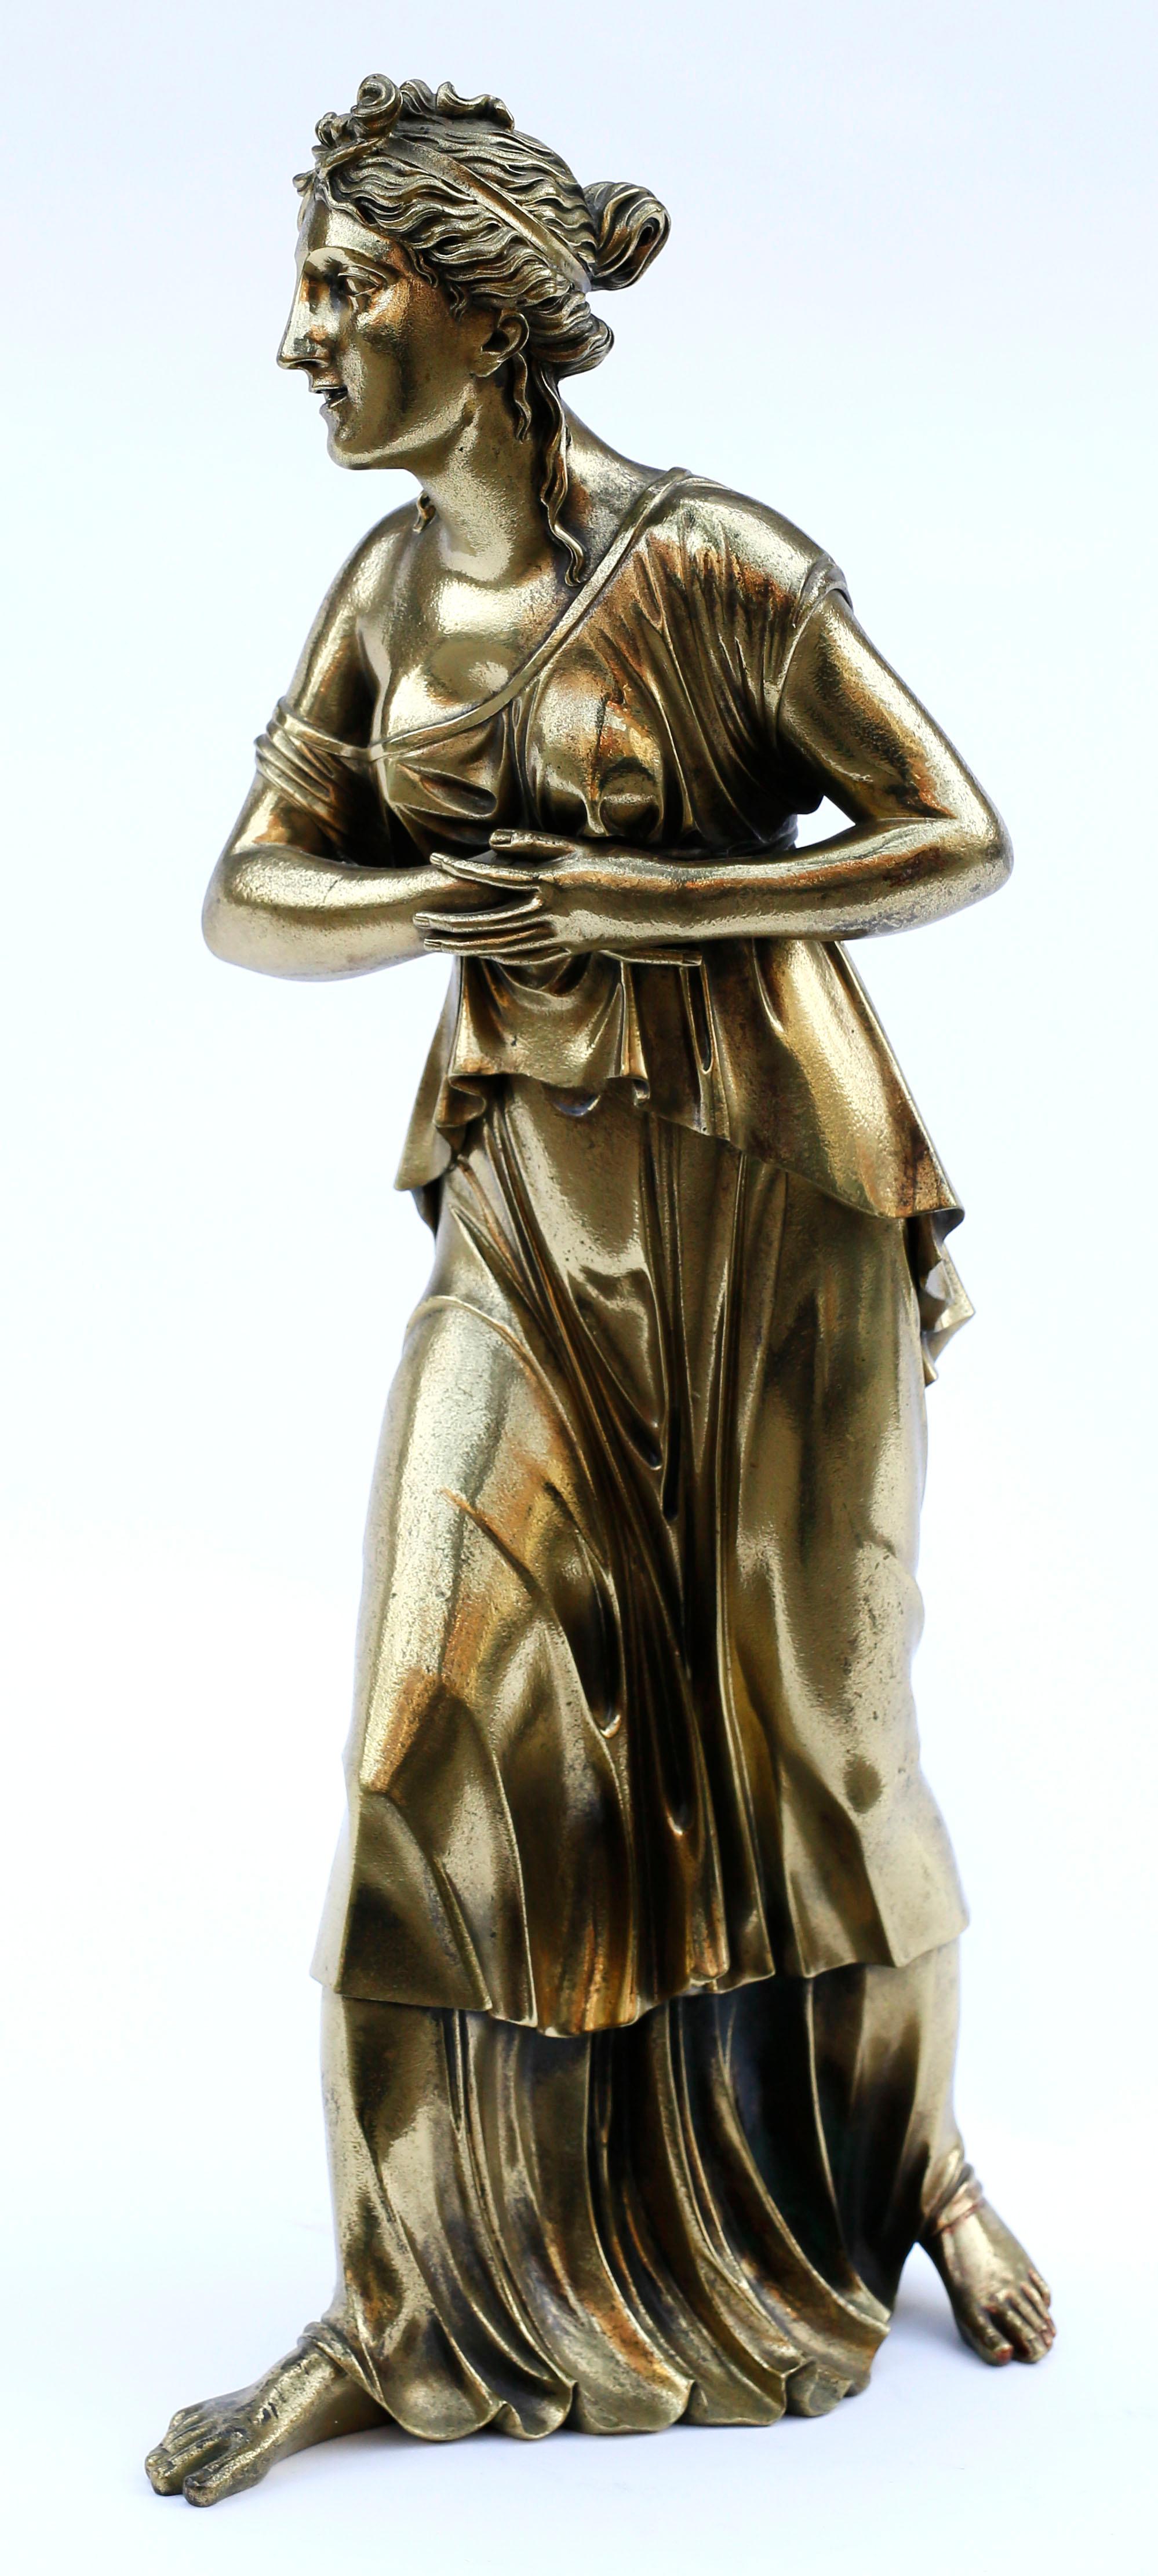 Eine meisterhafte große klassische Statue aus Bronzeguss, die eine schöne, schreitende junge Frau in einem wallenden ionischen Chiton darstellt. Der exquisite Guss der Details des Frauenhaars und des tief gefalteten Gewandes machen das Stück sowohl